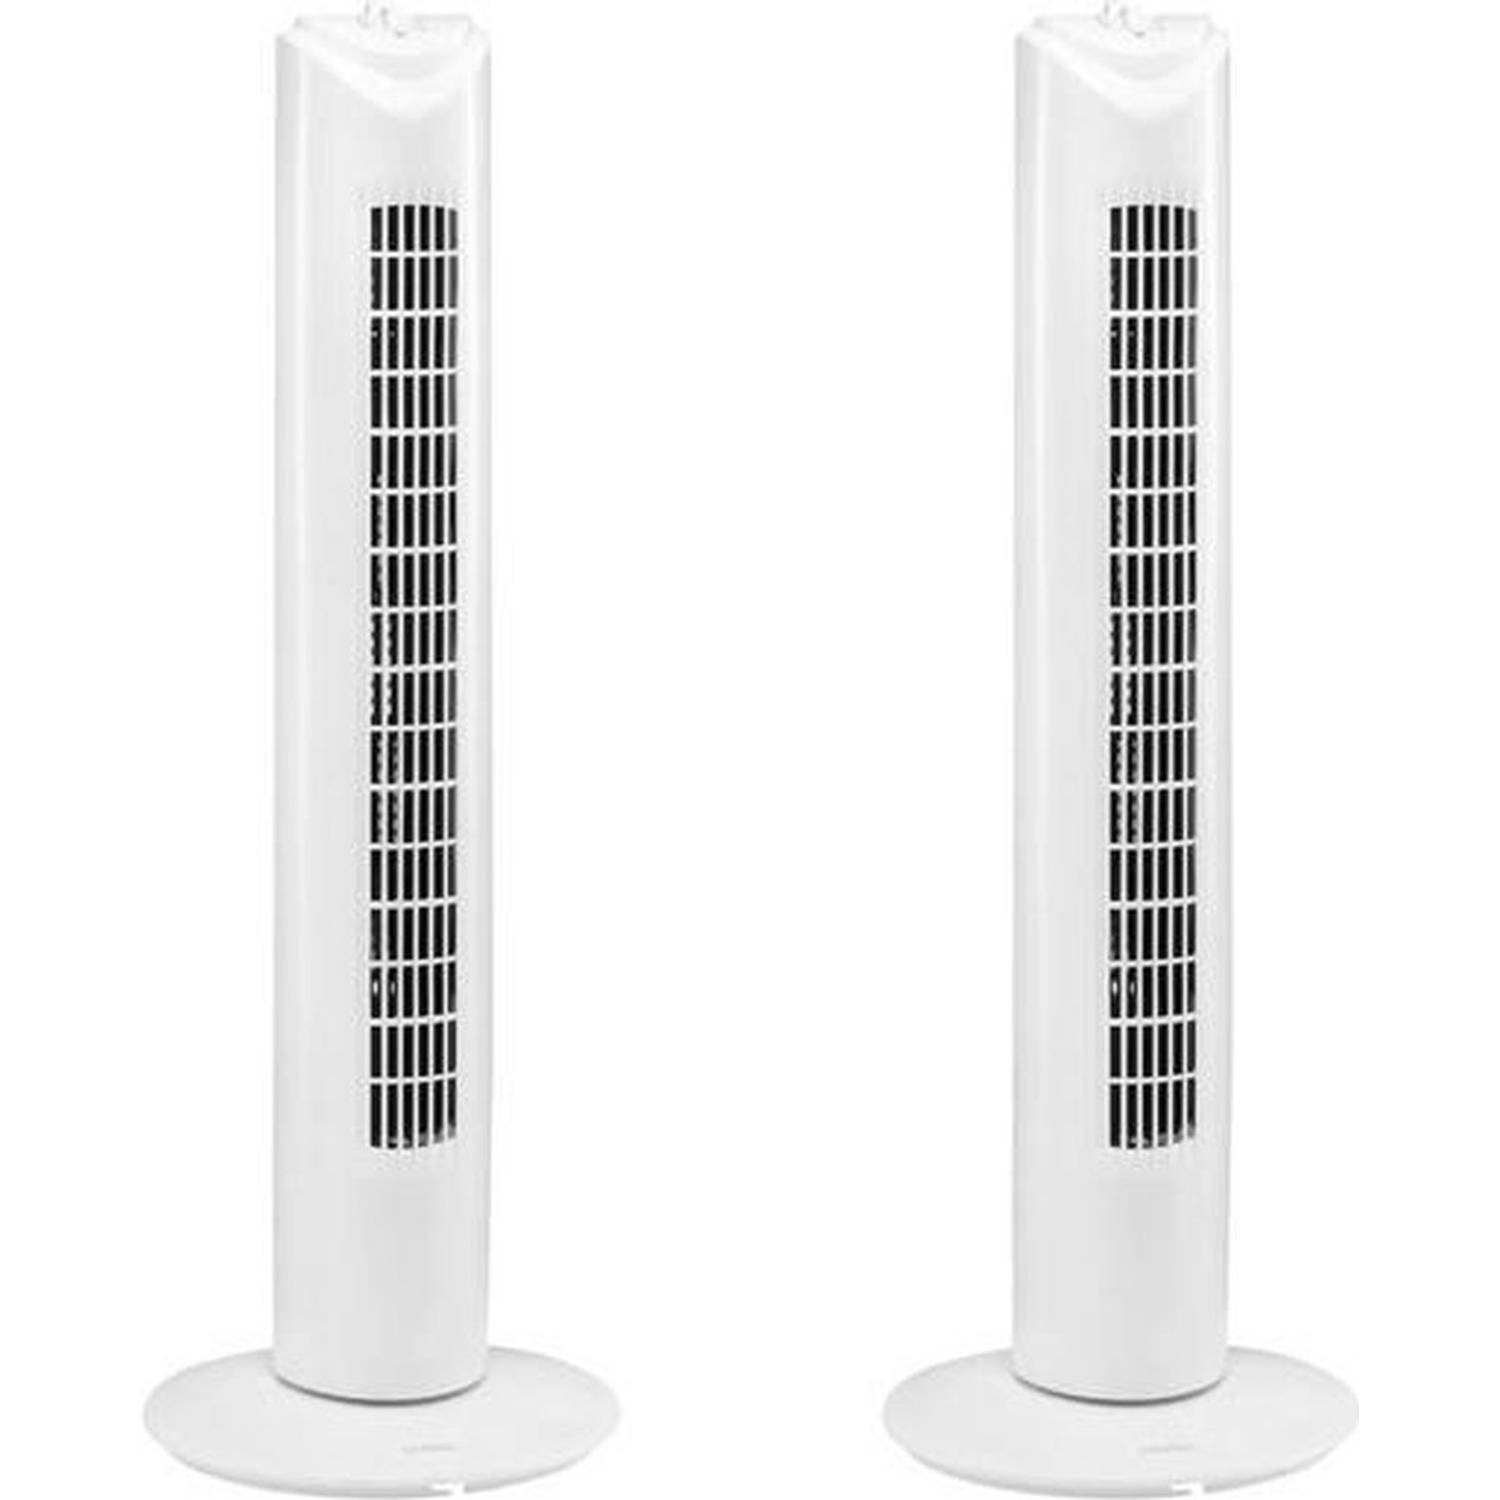 2 Stuks Ventilator - torenventilator - torenventilator ventilator zuil wit - torenventilator kopen